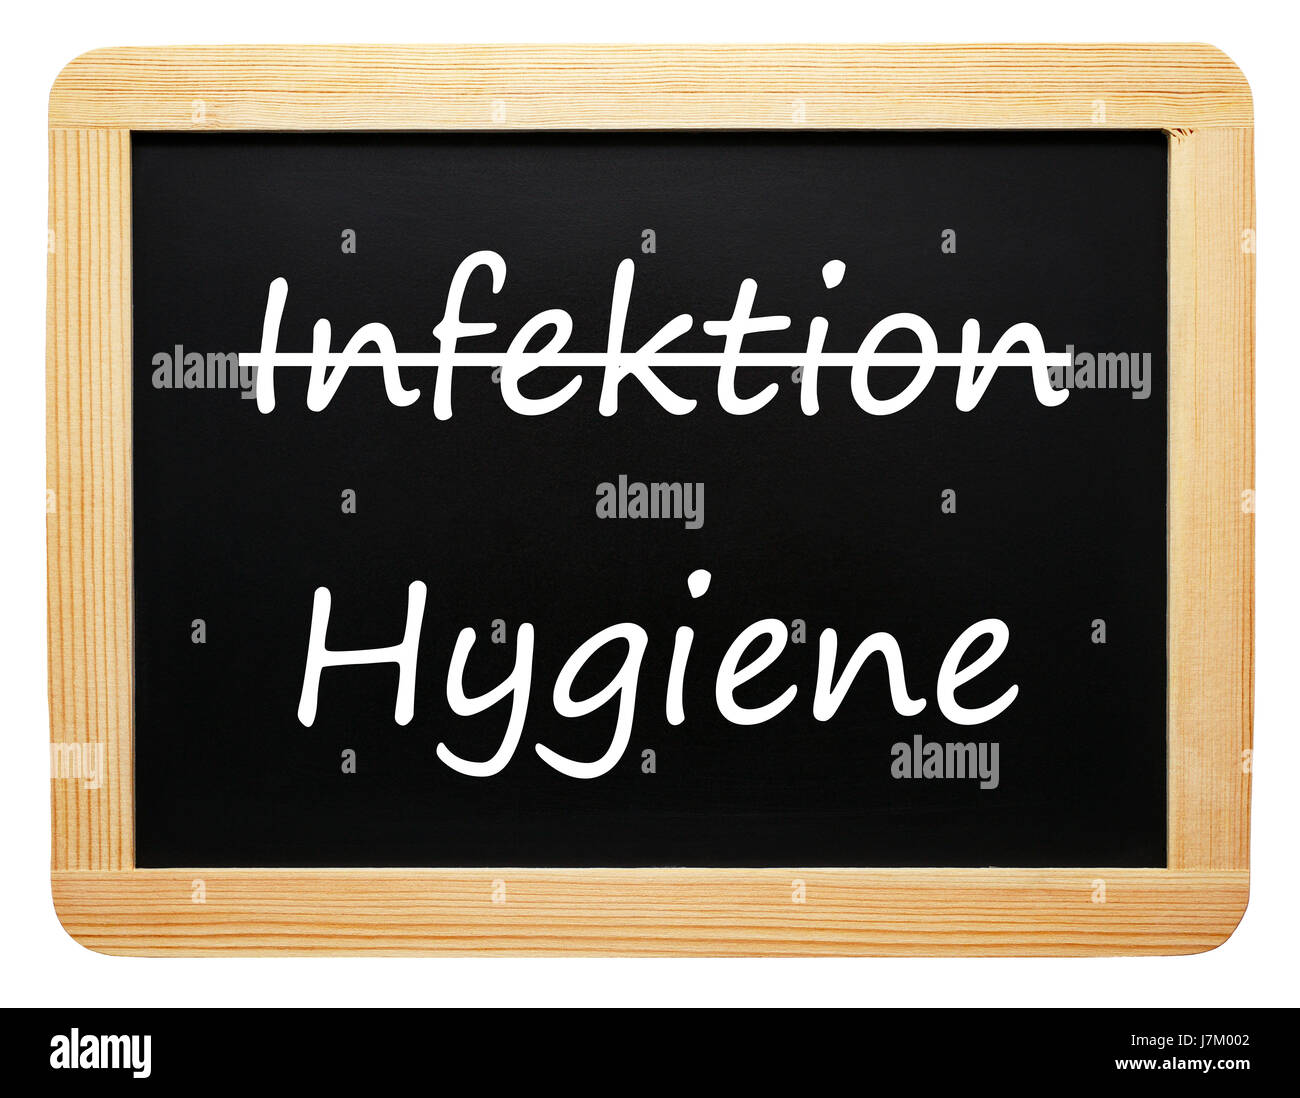 infection / hygiene - konzept tafel - freigestellt Stock Photo